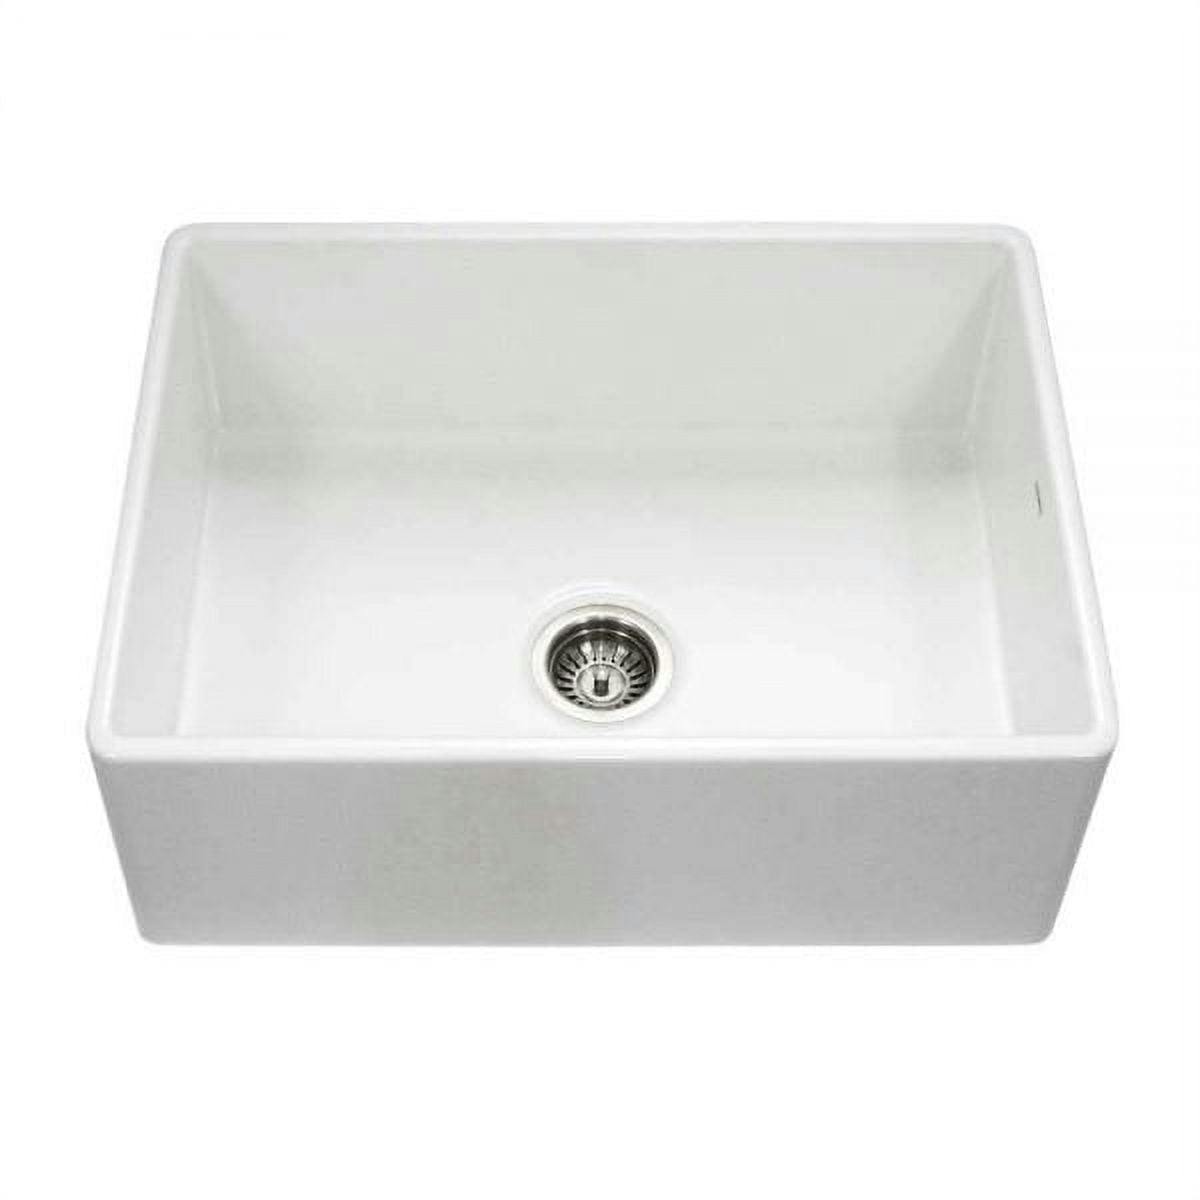 Elegant Farmhouse 30" White Fireclay Undermount Single Bowl Kitchen Sink